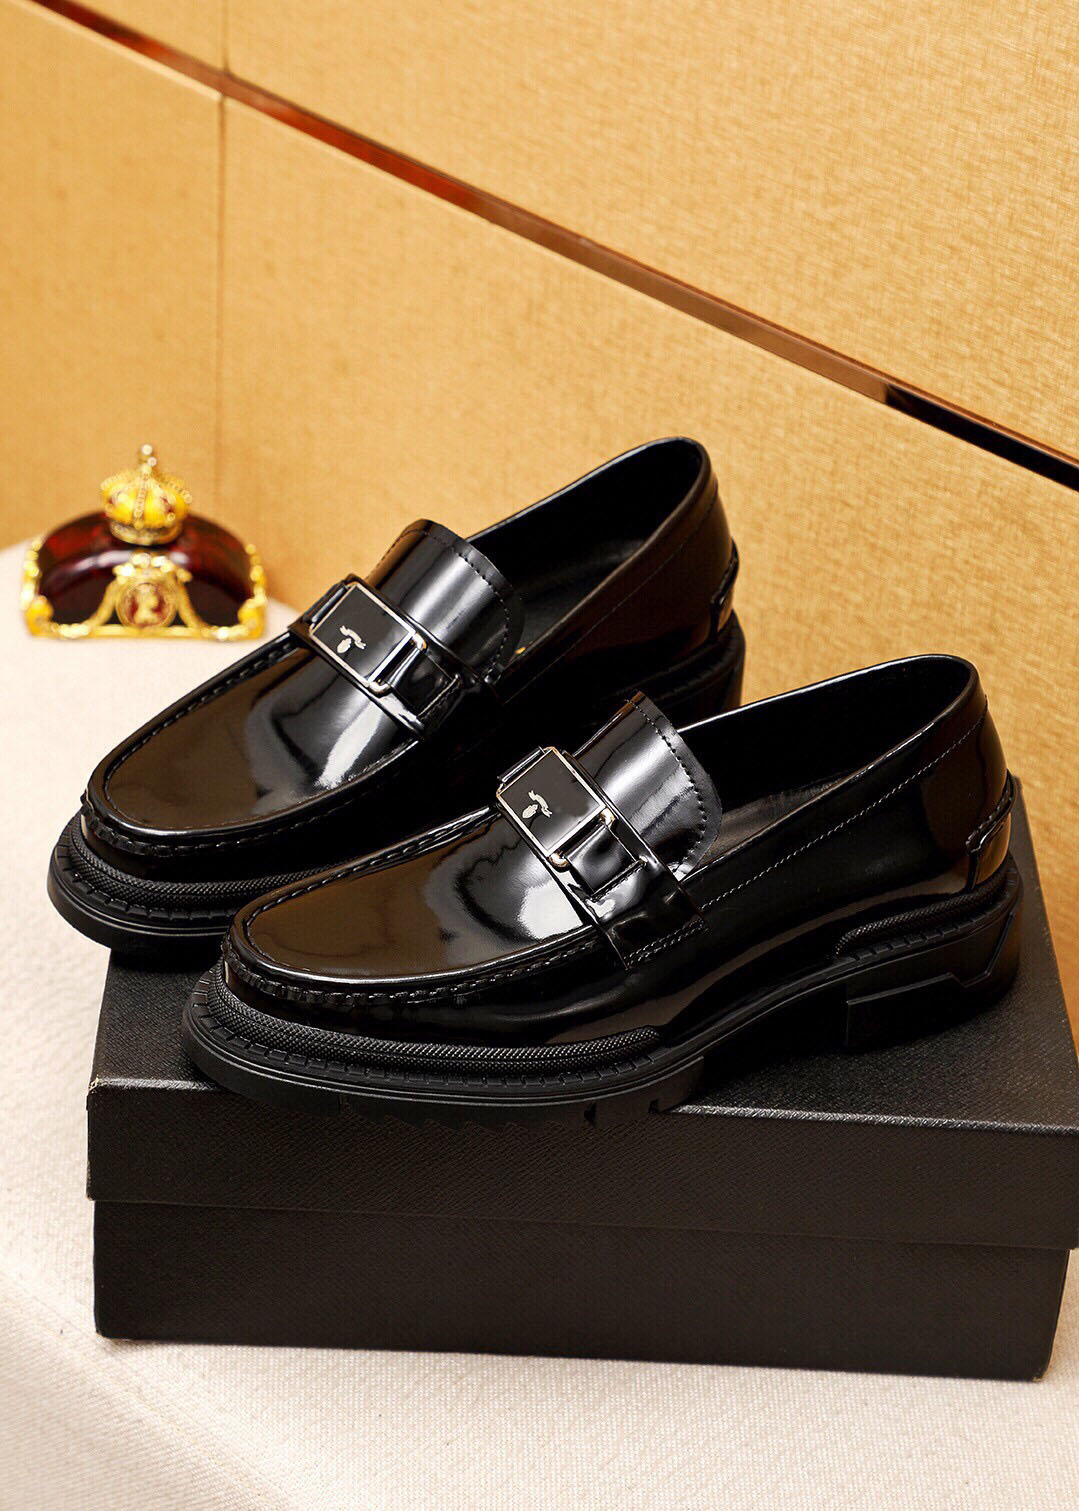 2023 Mens Frade обувь джентльменская мода подлинная кожаная бизнес оксфордс мужской бренд туристическая прогулка повседневная комфортная обувь размером 38-45